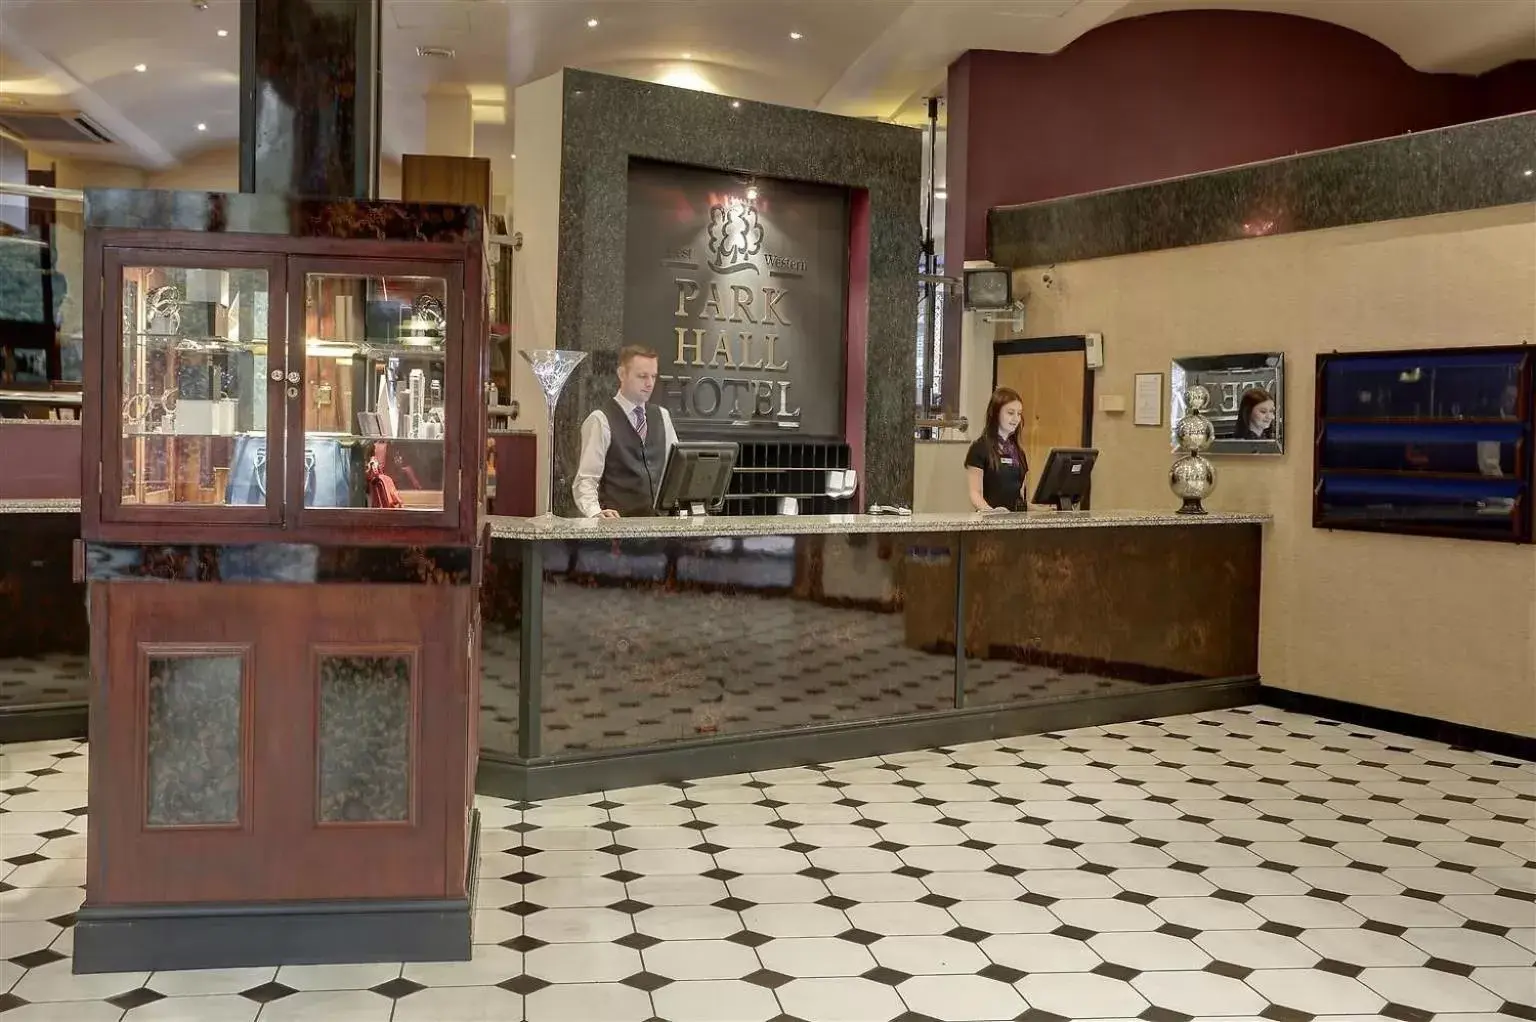 Lobby or reception in BRILLIANT Park Hall Hotel,Chorley